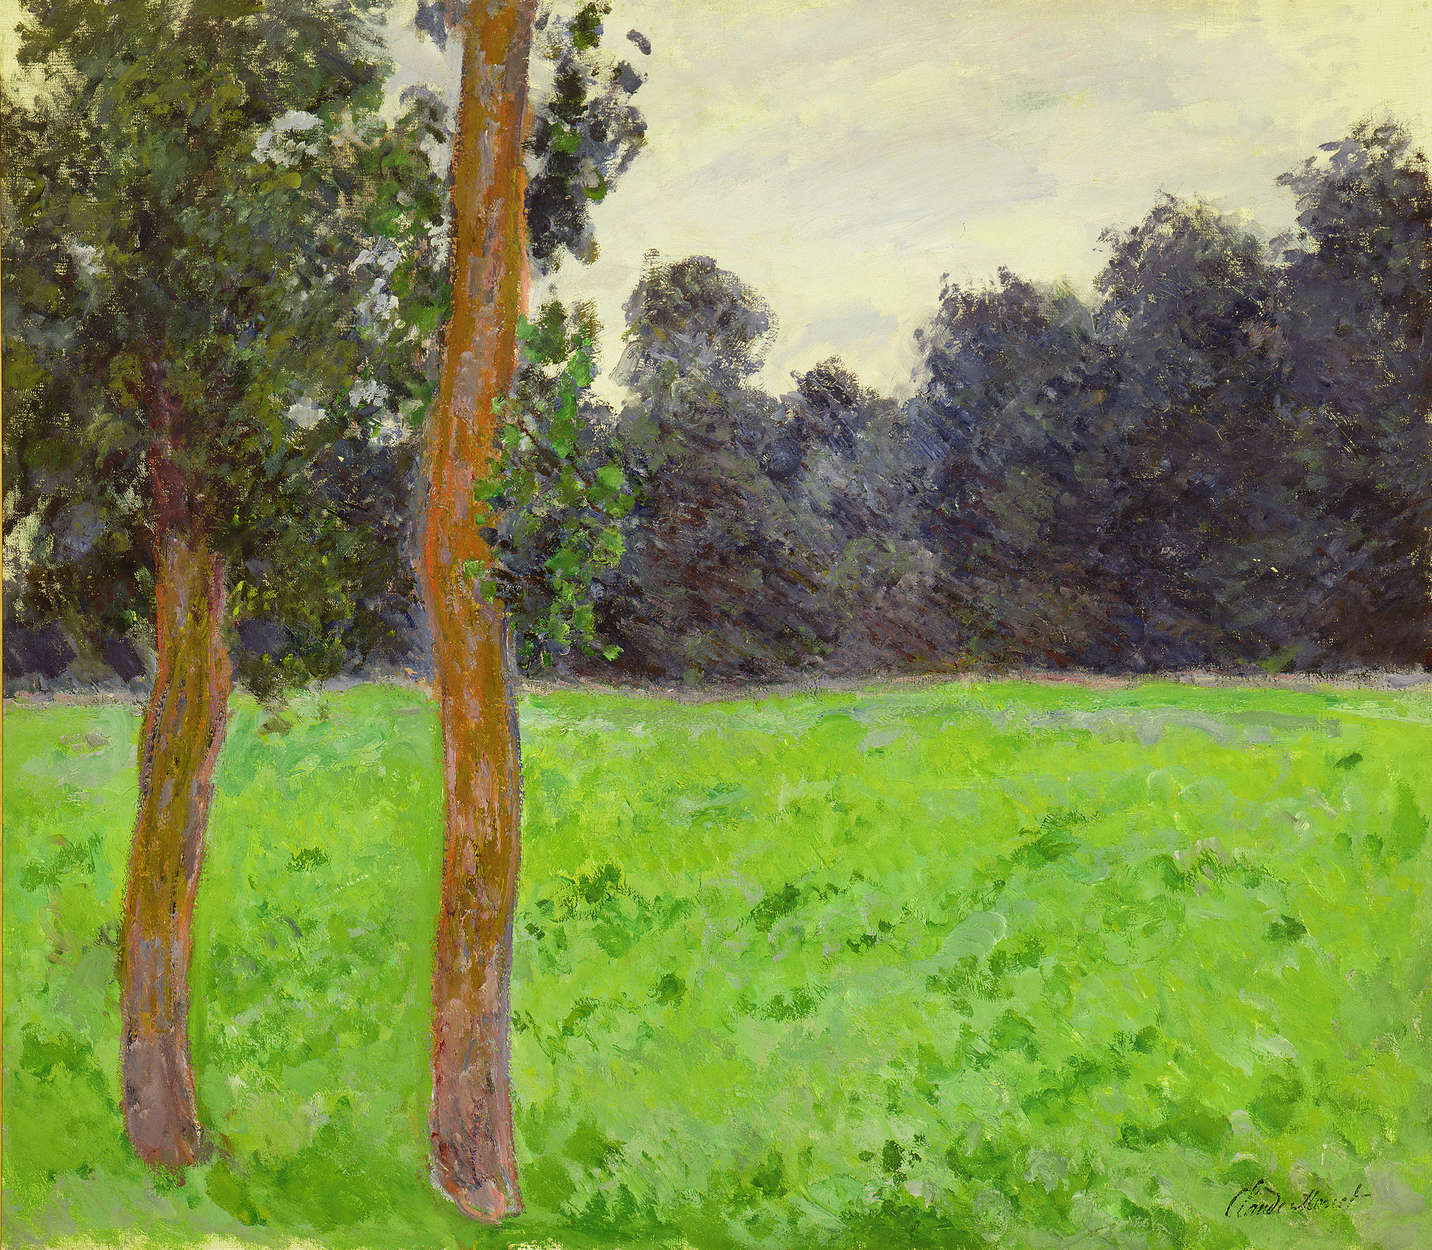             Papier peint panoramique "Deux arbres dans une prairie" de Claude Monet
        